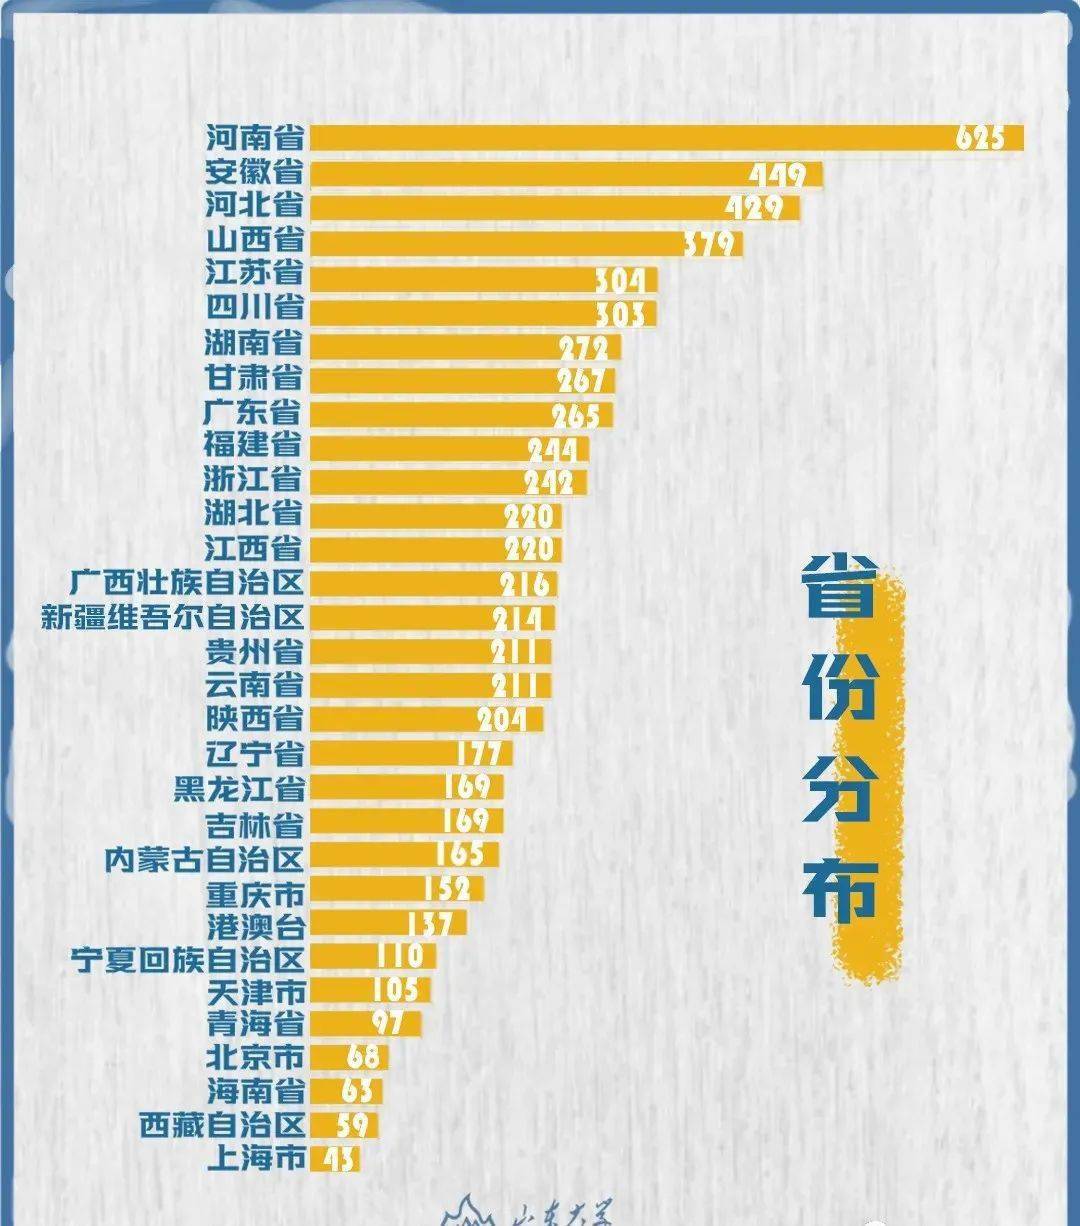 莱阳市人口数量_烟台市各区县 莱阳市人口最多,栖霞市面积最大,龙口市GDP第一